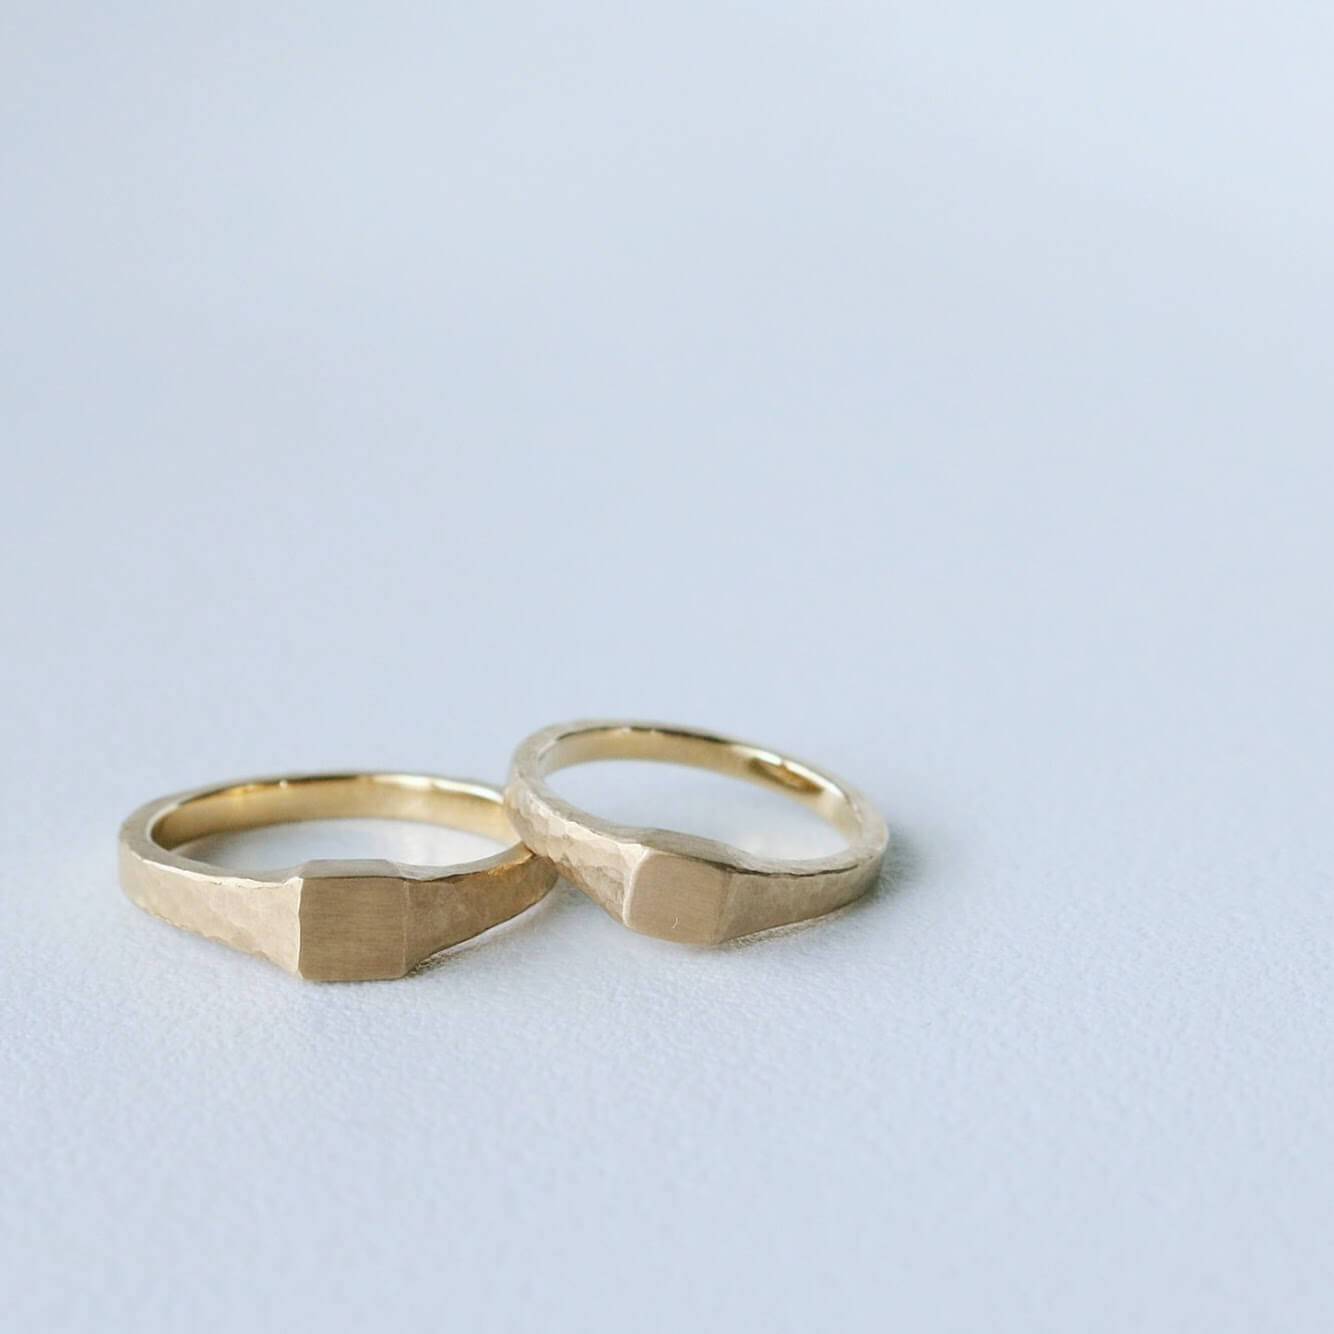 男性におすすめのかっこいい結婚指輪 人気のデザインの紹介